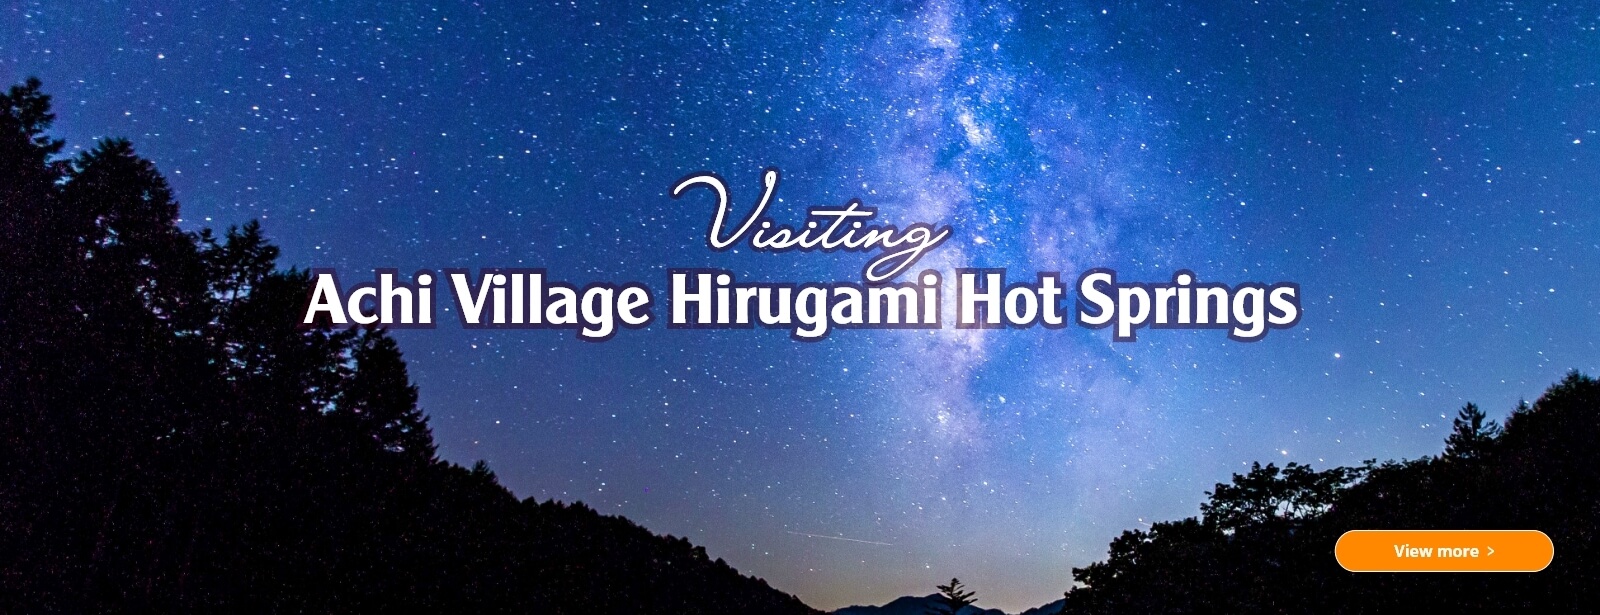 1Visiting Achi Village Hirugami Hot Springs